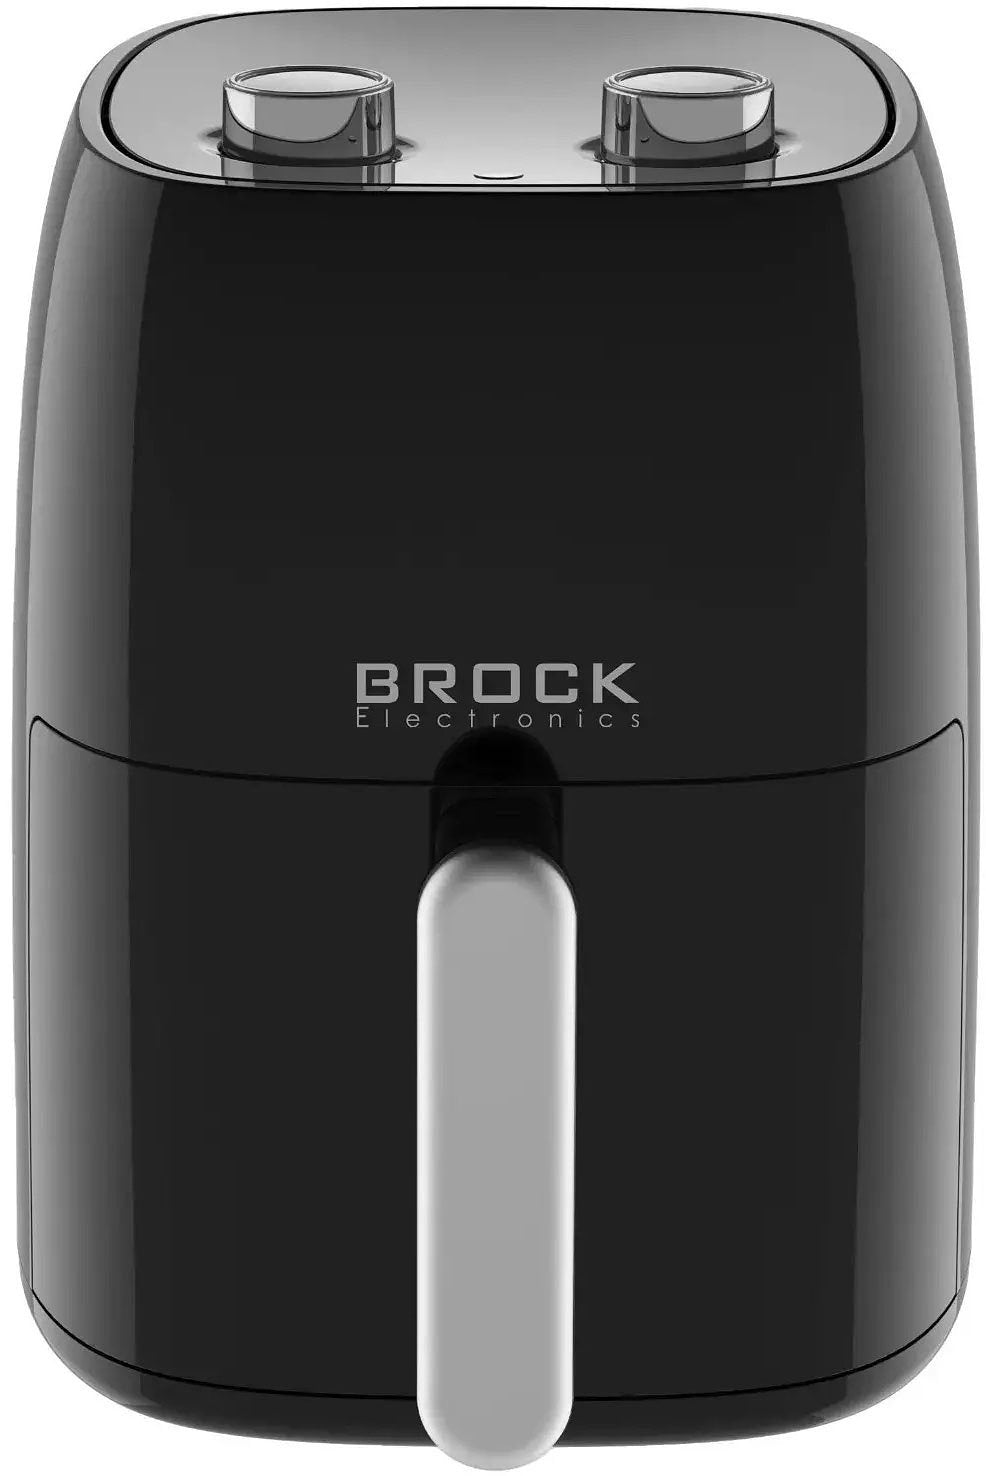 BROCK Electronics Airfryer AFM 4203 BK (4.2 liter, 1500W)